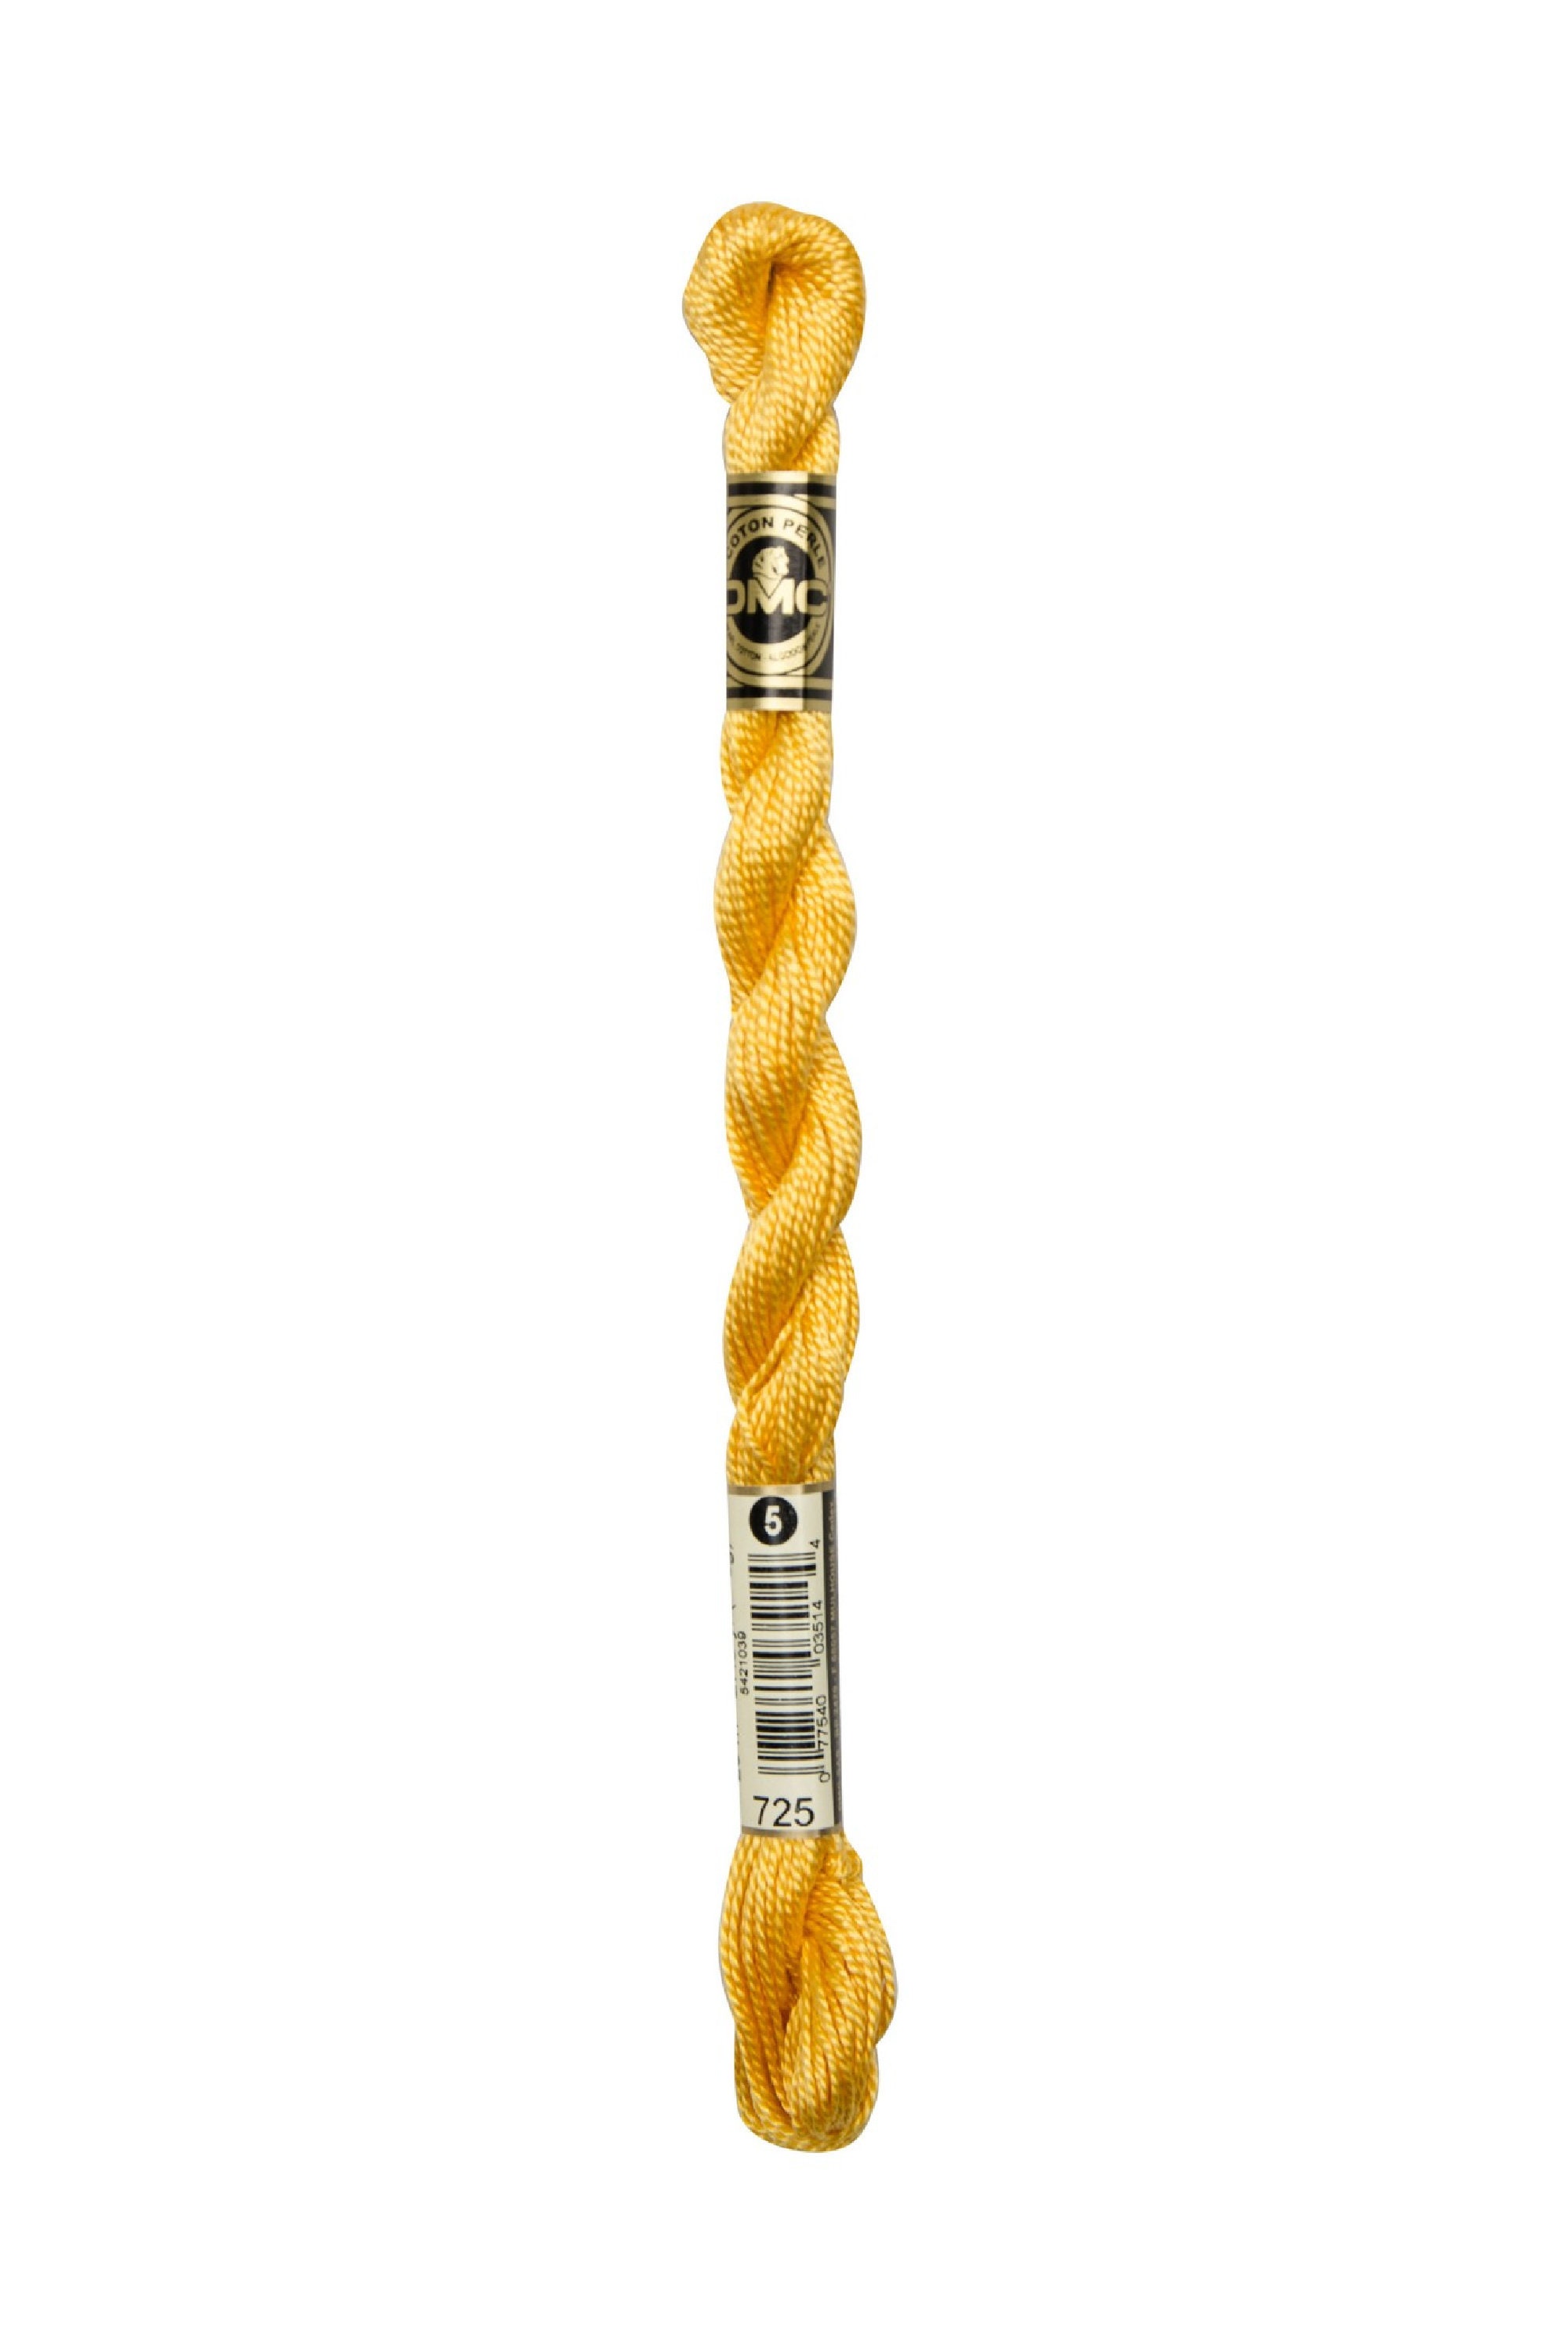 DMC 725 Pearl Cotton Thread | Size 8 | Topaz Yellow